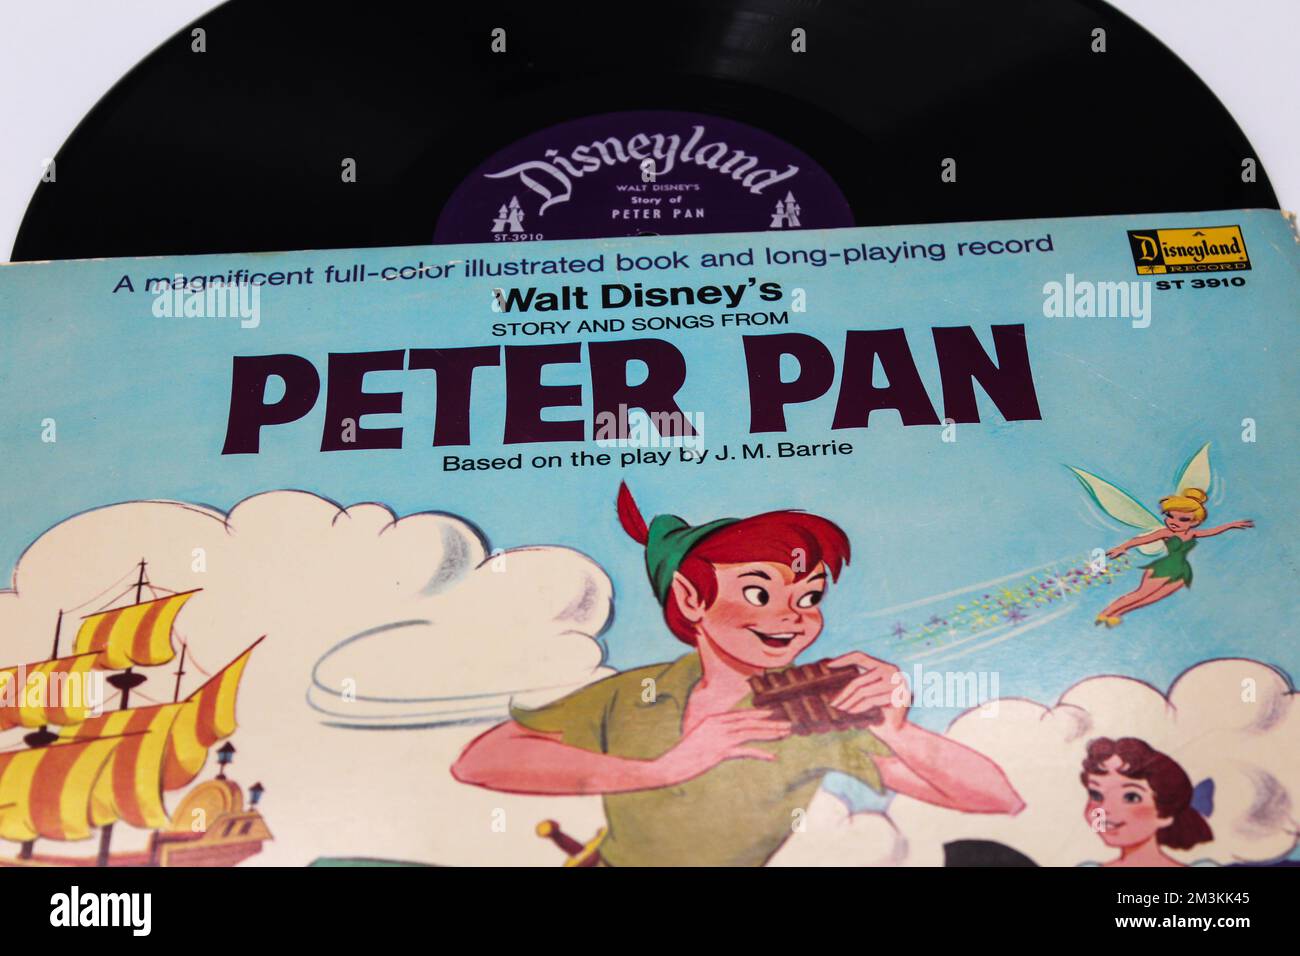 Peter Pan ist ein amerikanischer animierter Abenteuerfantasiefilm aus dem Jahr 1953, produziert von Walt Disney Productions auf einer Schallplatten-lp-Disc. Stockfoto